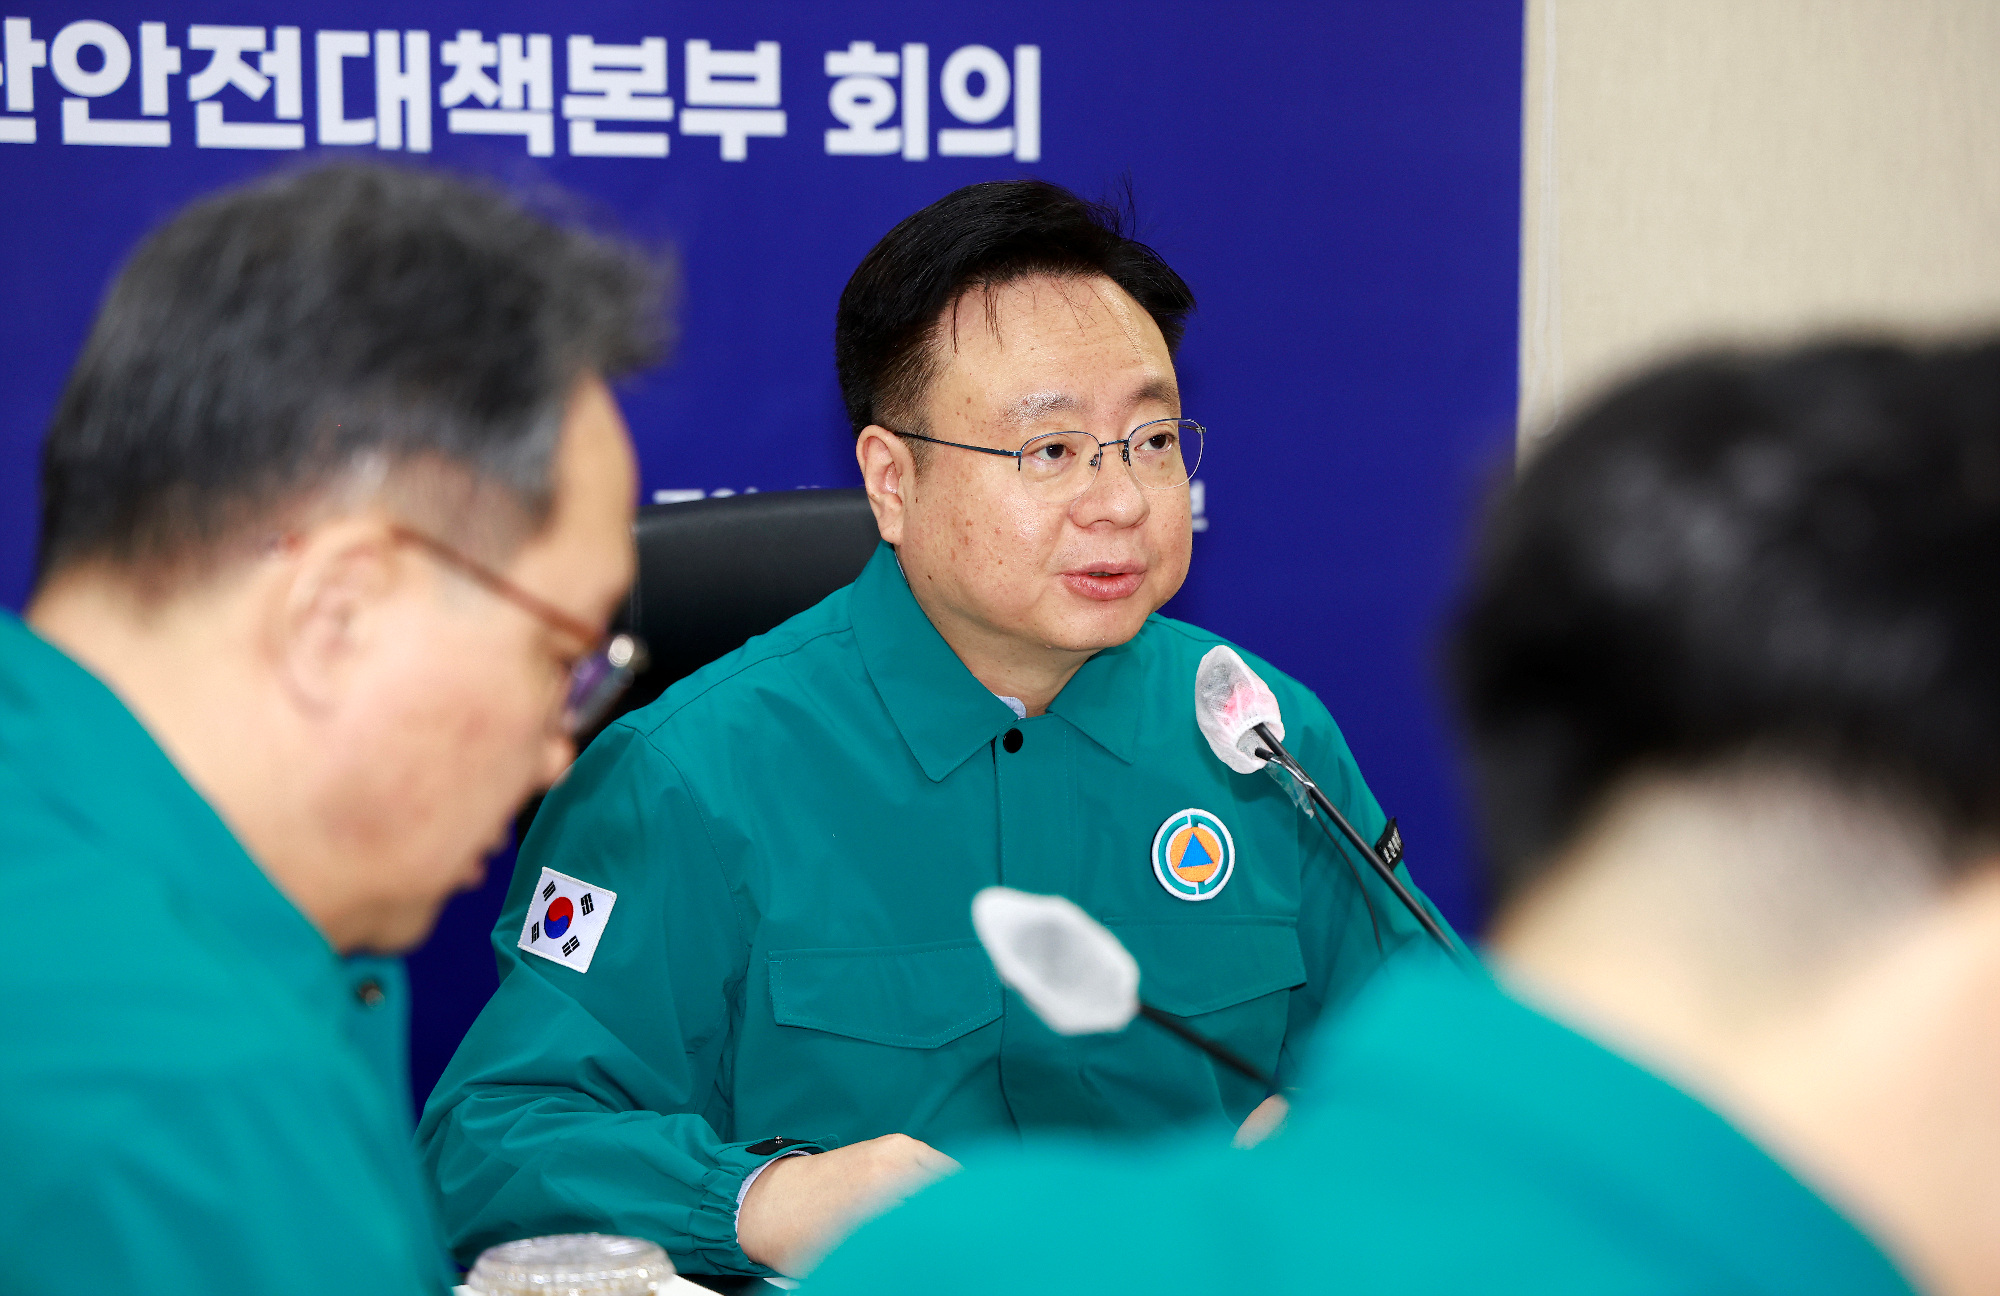 비상진료체계 운영현황 점검 및 강화방안 논의 사진7